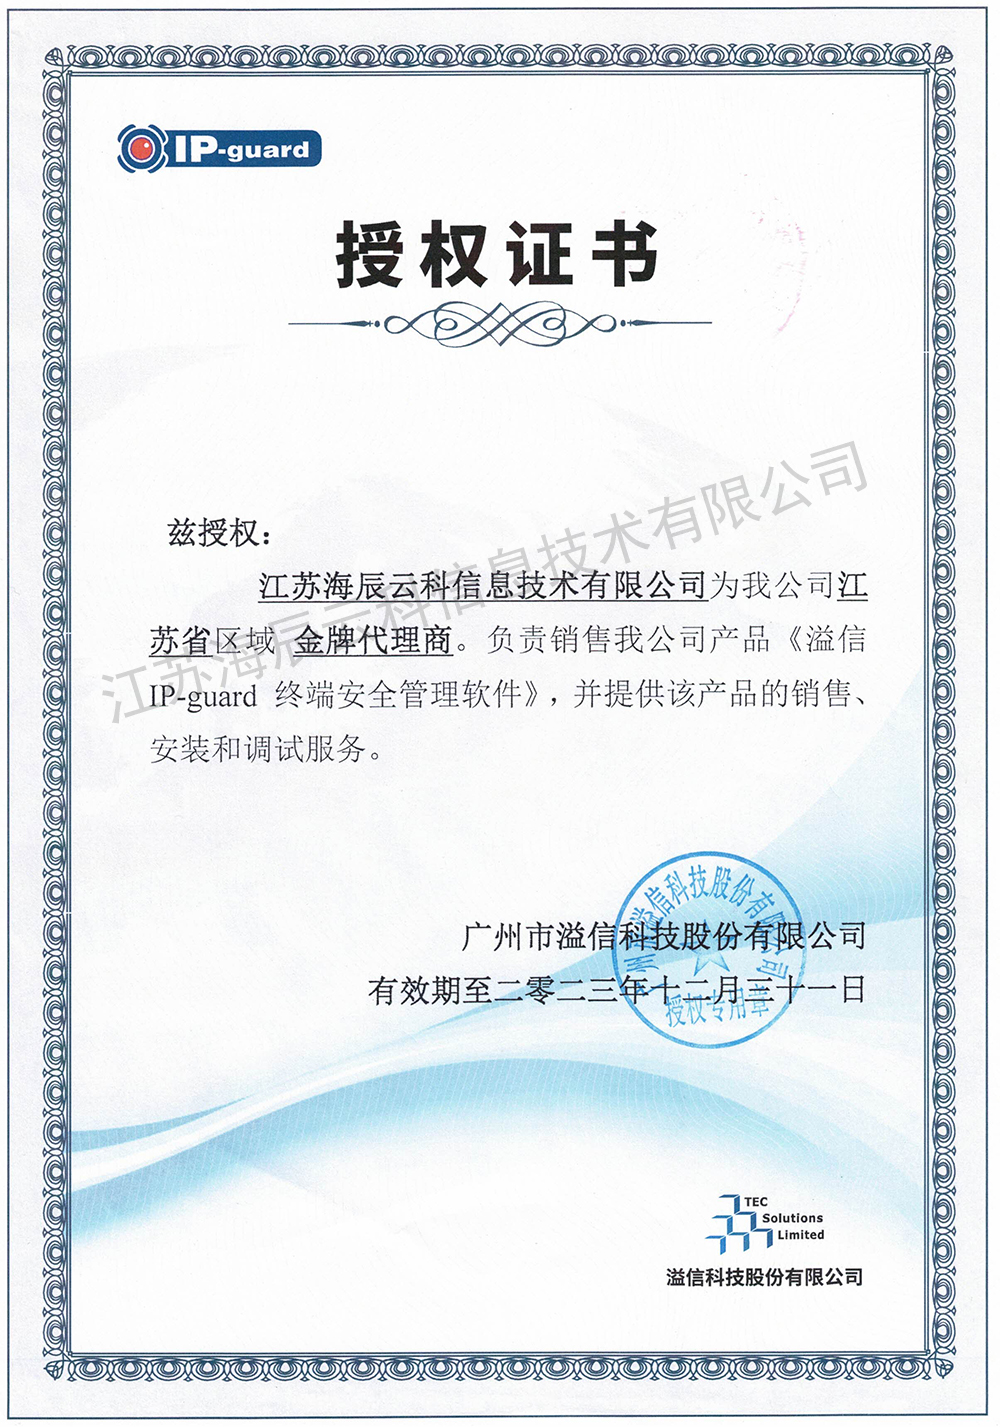 溢信IP-guard金牌代理商授權書-海辰云科-有效期至2023.12.31.jpg